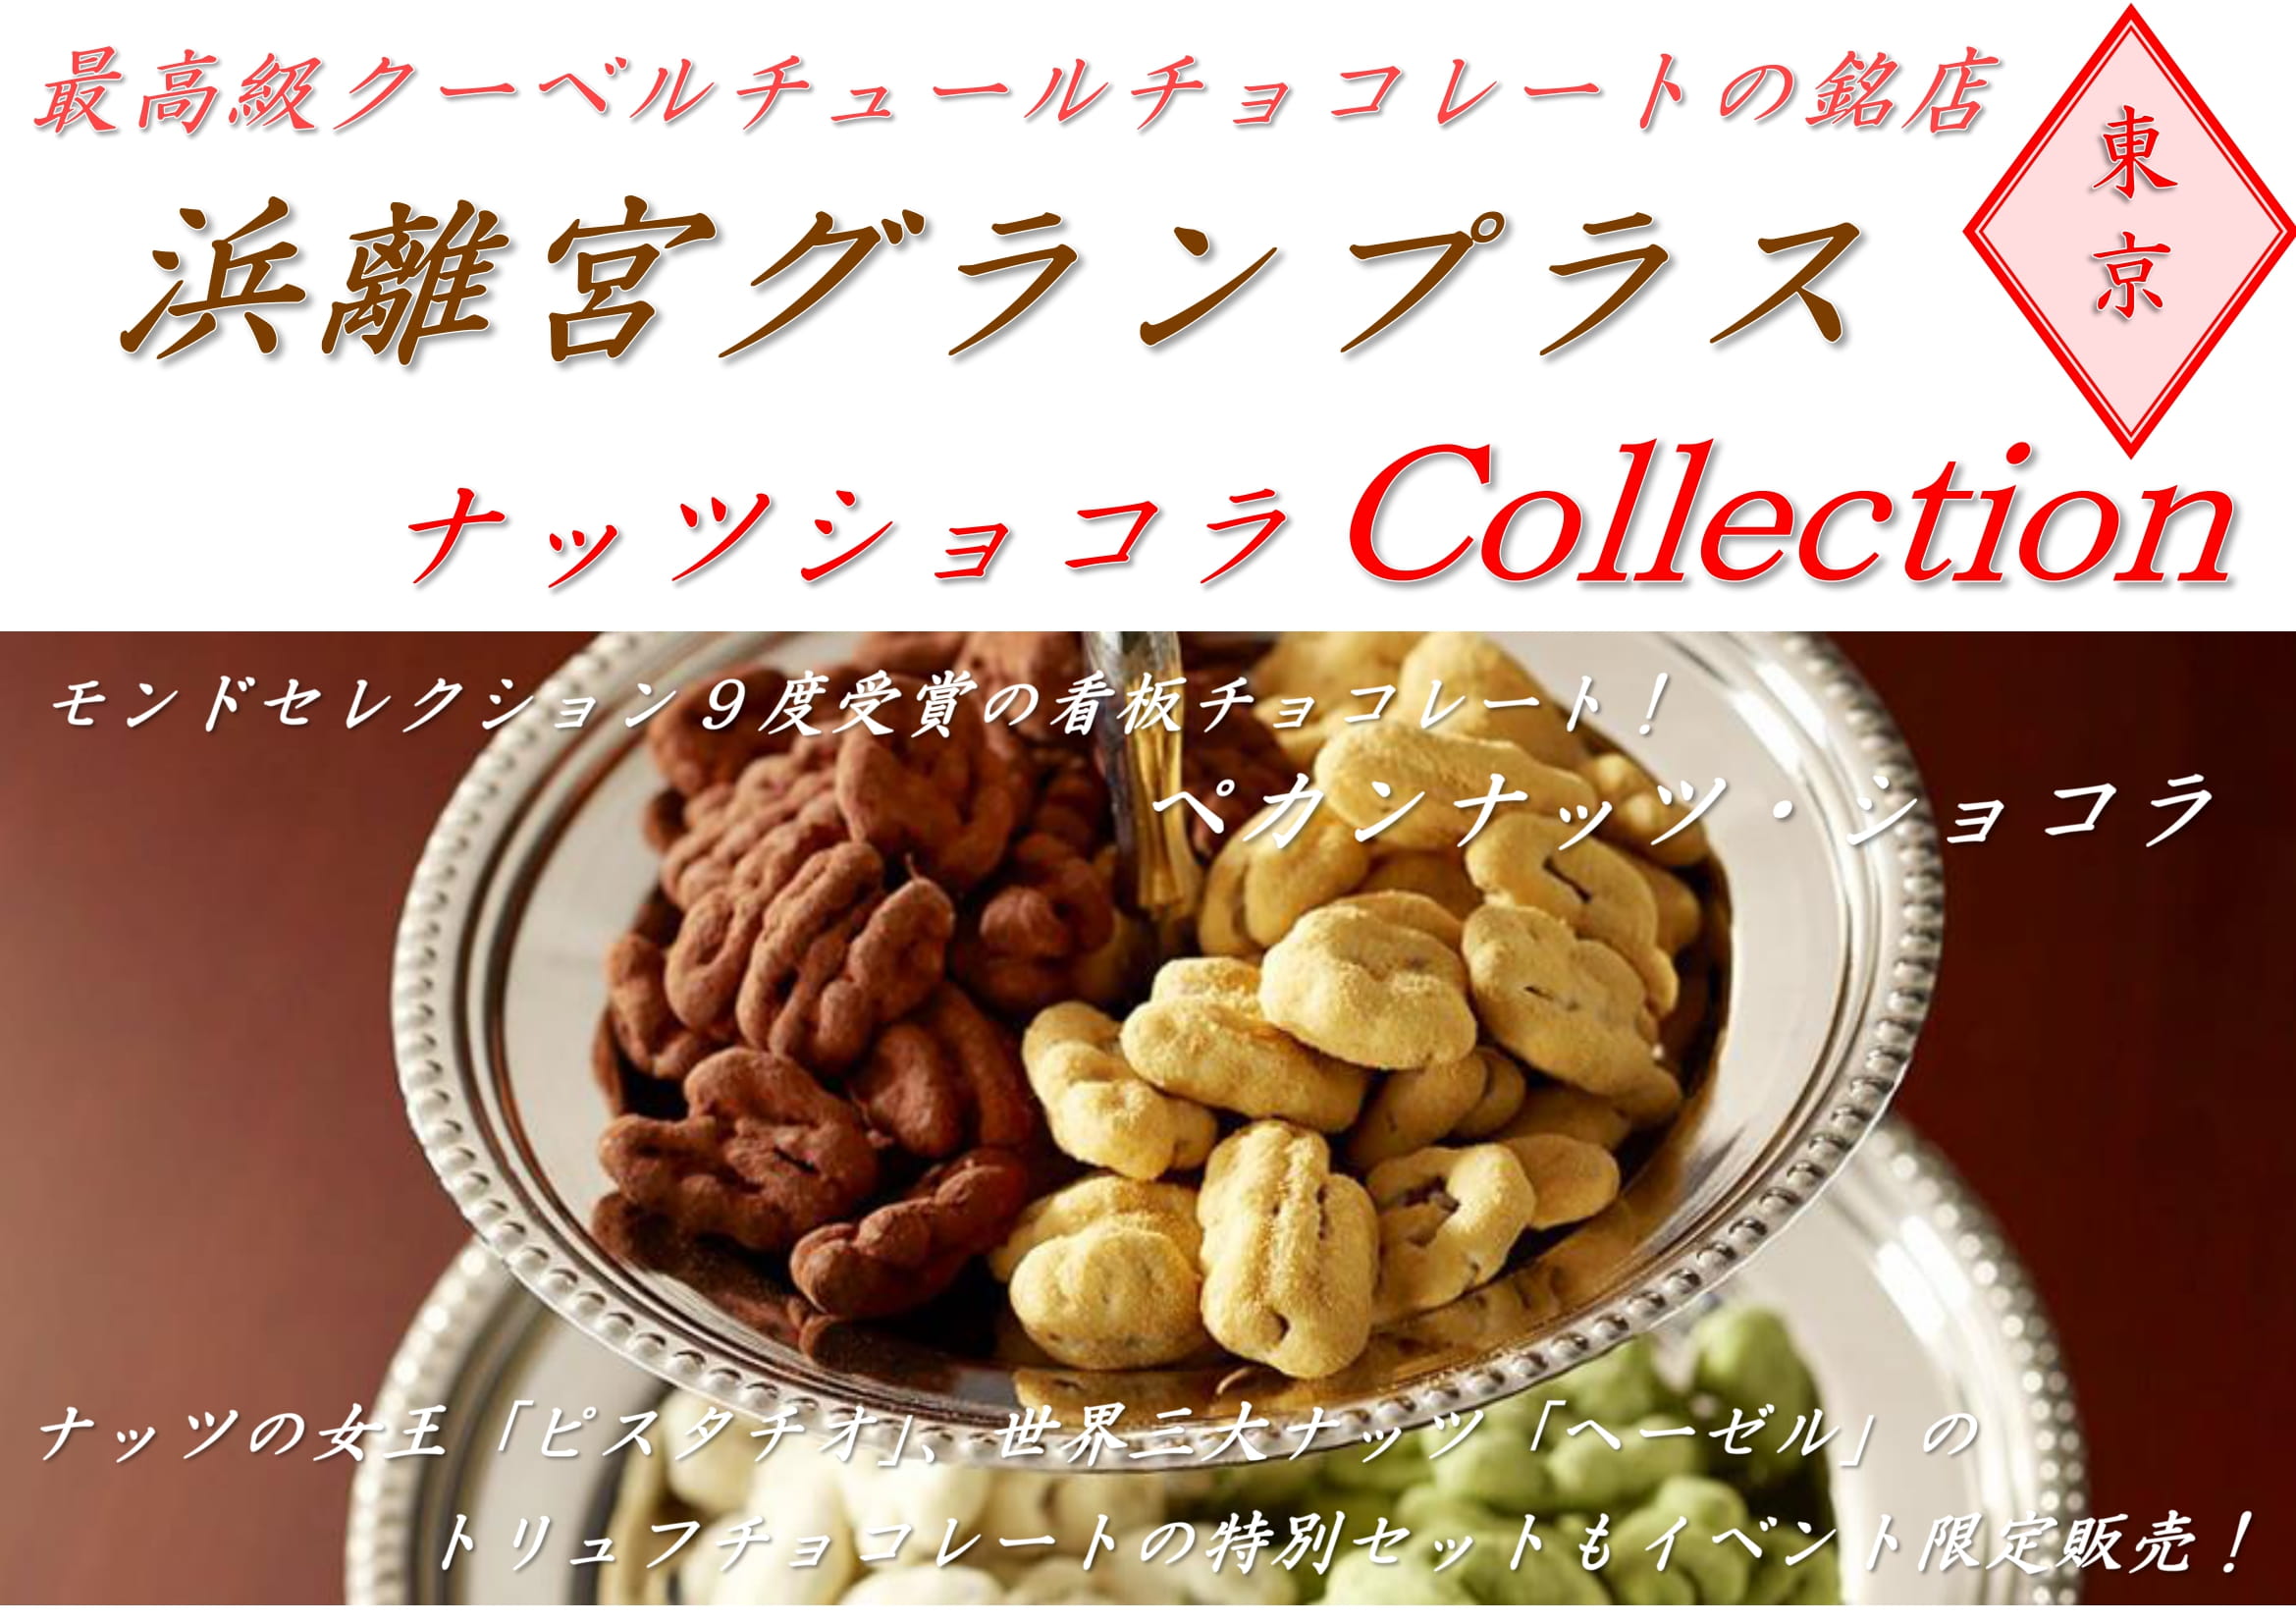 【ビジョン2】ナッツチョコレート-1